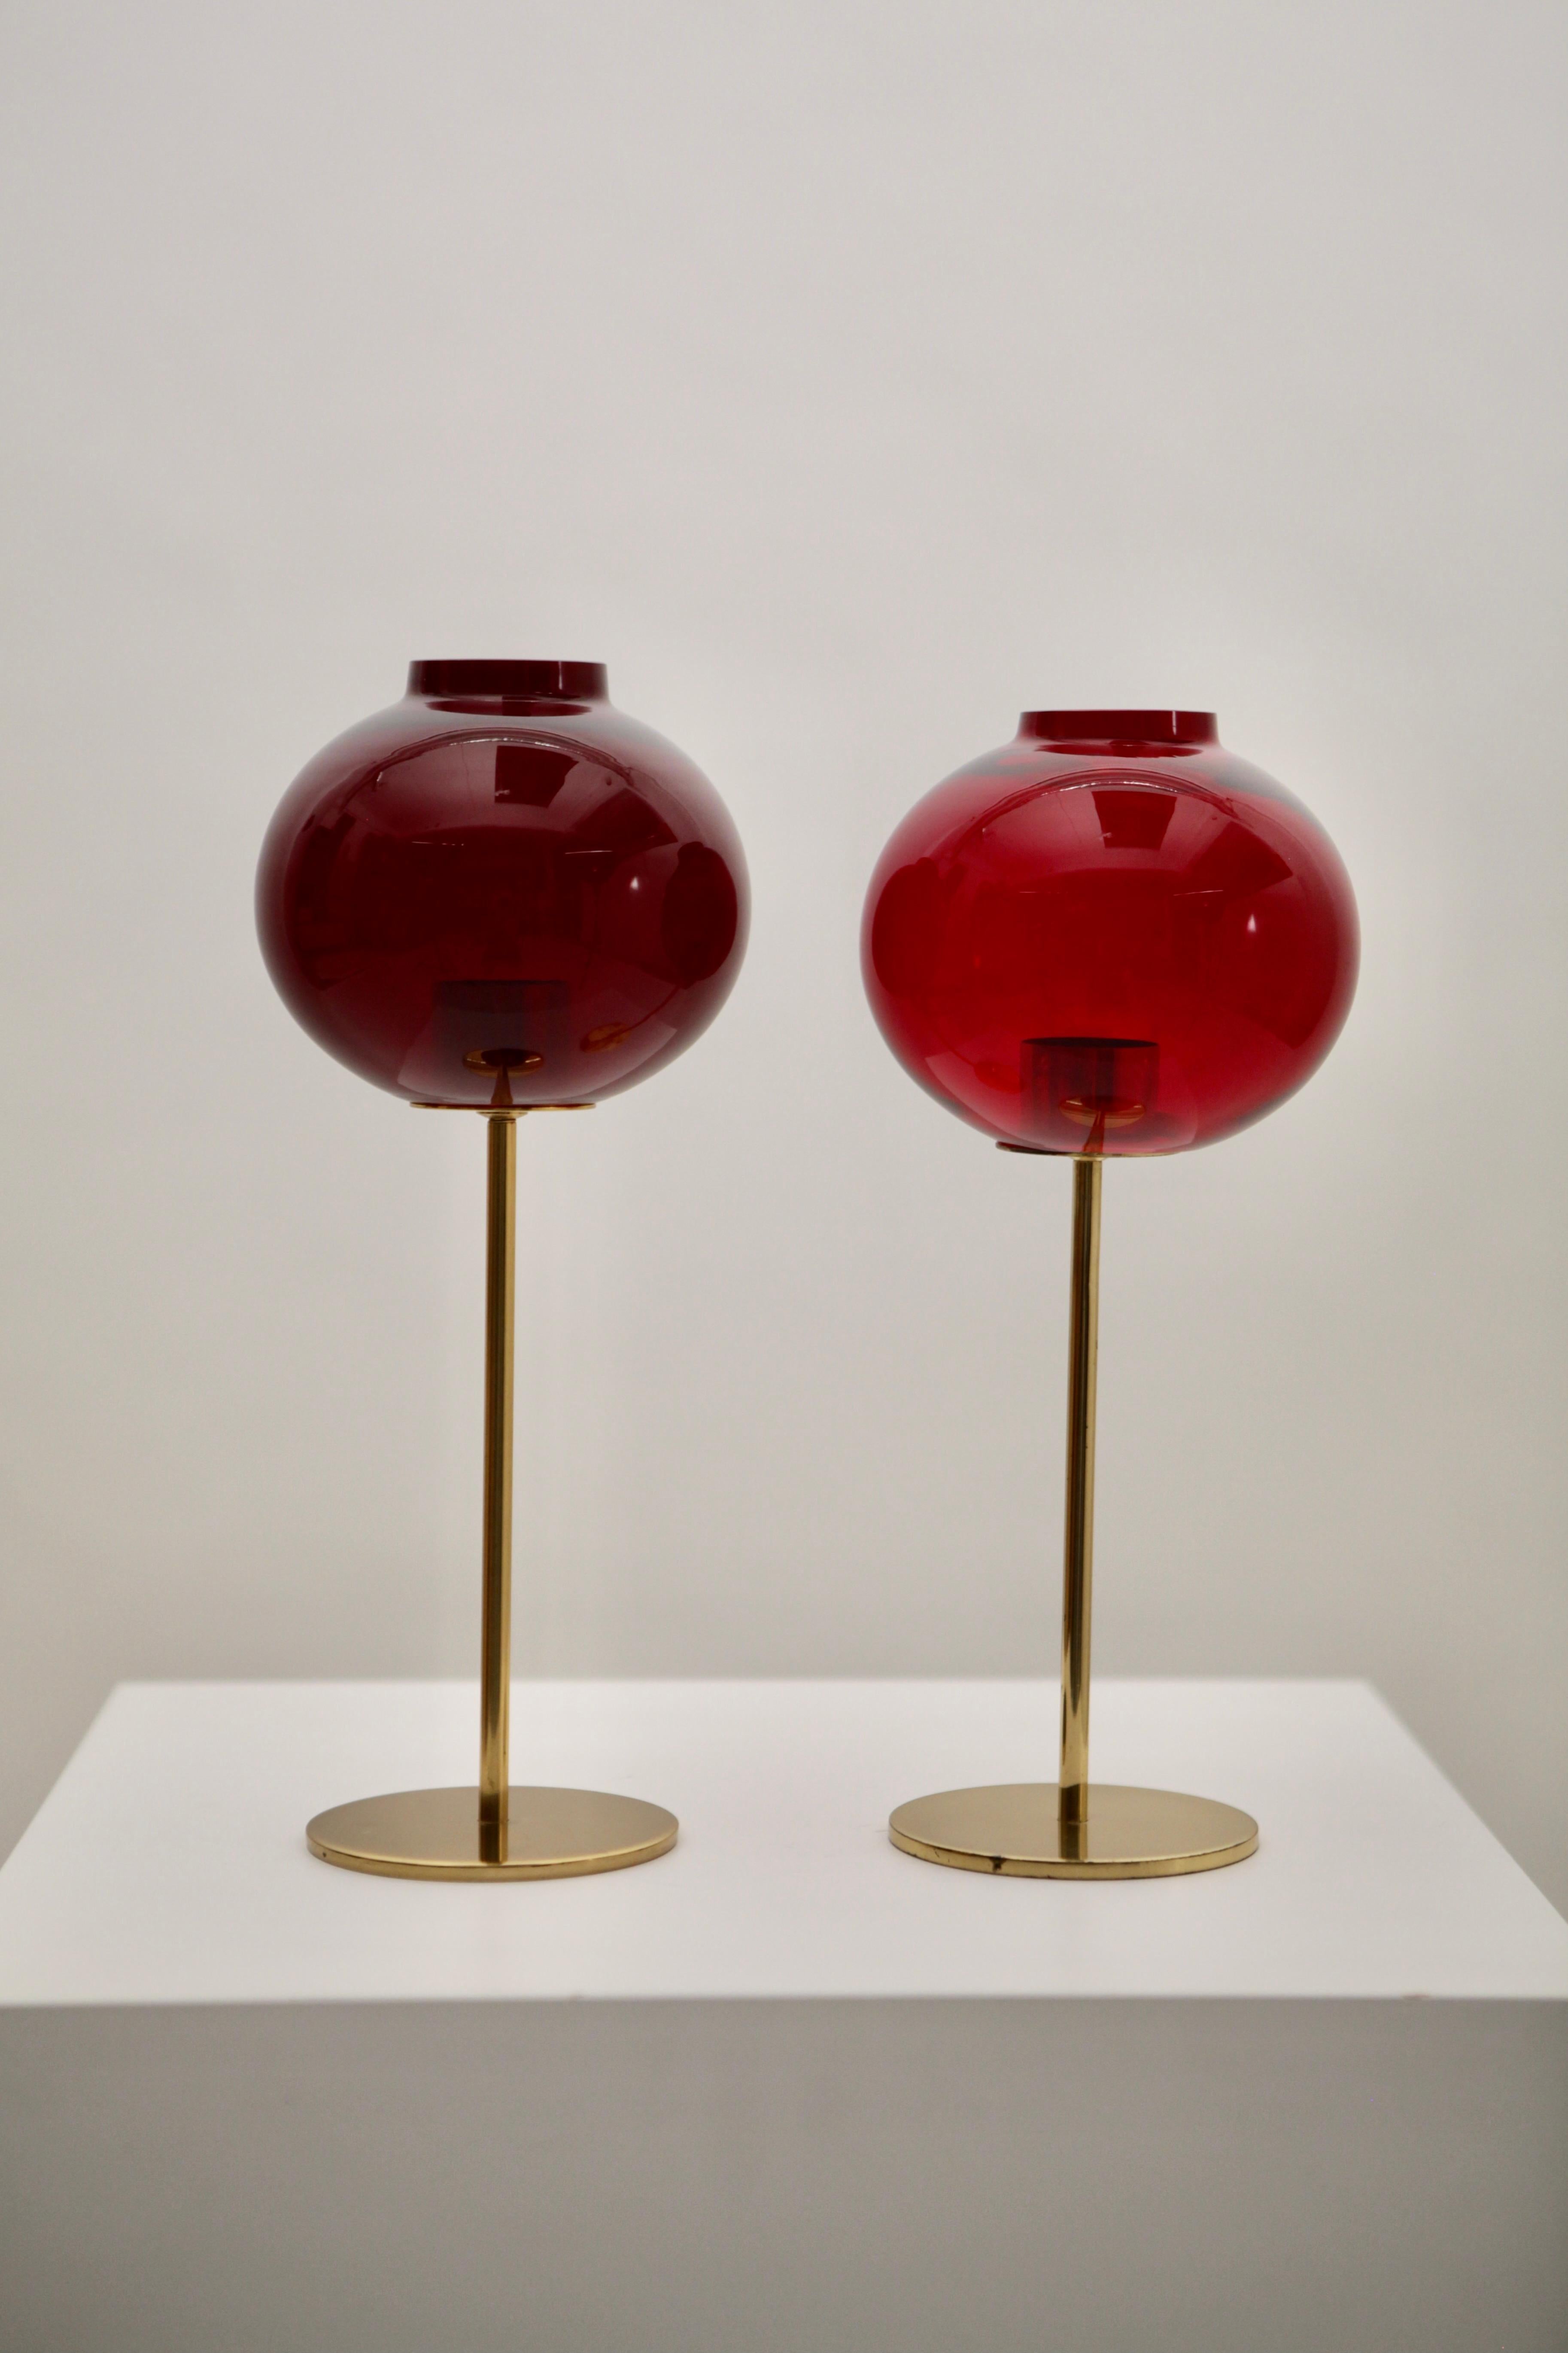 Paire de lampes en verre rouge et laiton de Hans-Agne Agnes.
Conçue et fabriquée en Suède dans les années 1960.
Excellent état vintage, pas d'éclats, le verre de couleur rouge est légèrement différent l'un de l'autre, ainsi que la hauteur varie de